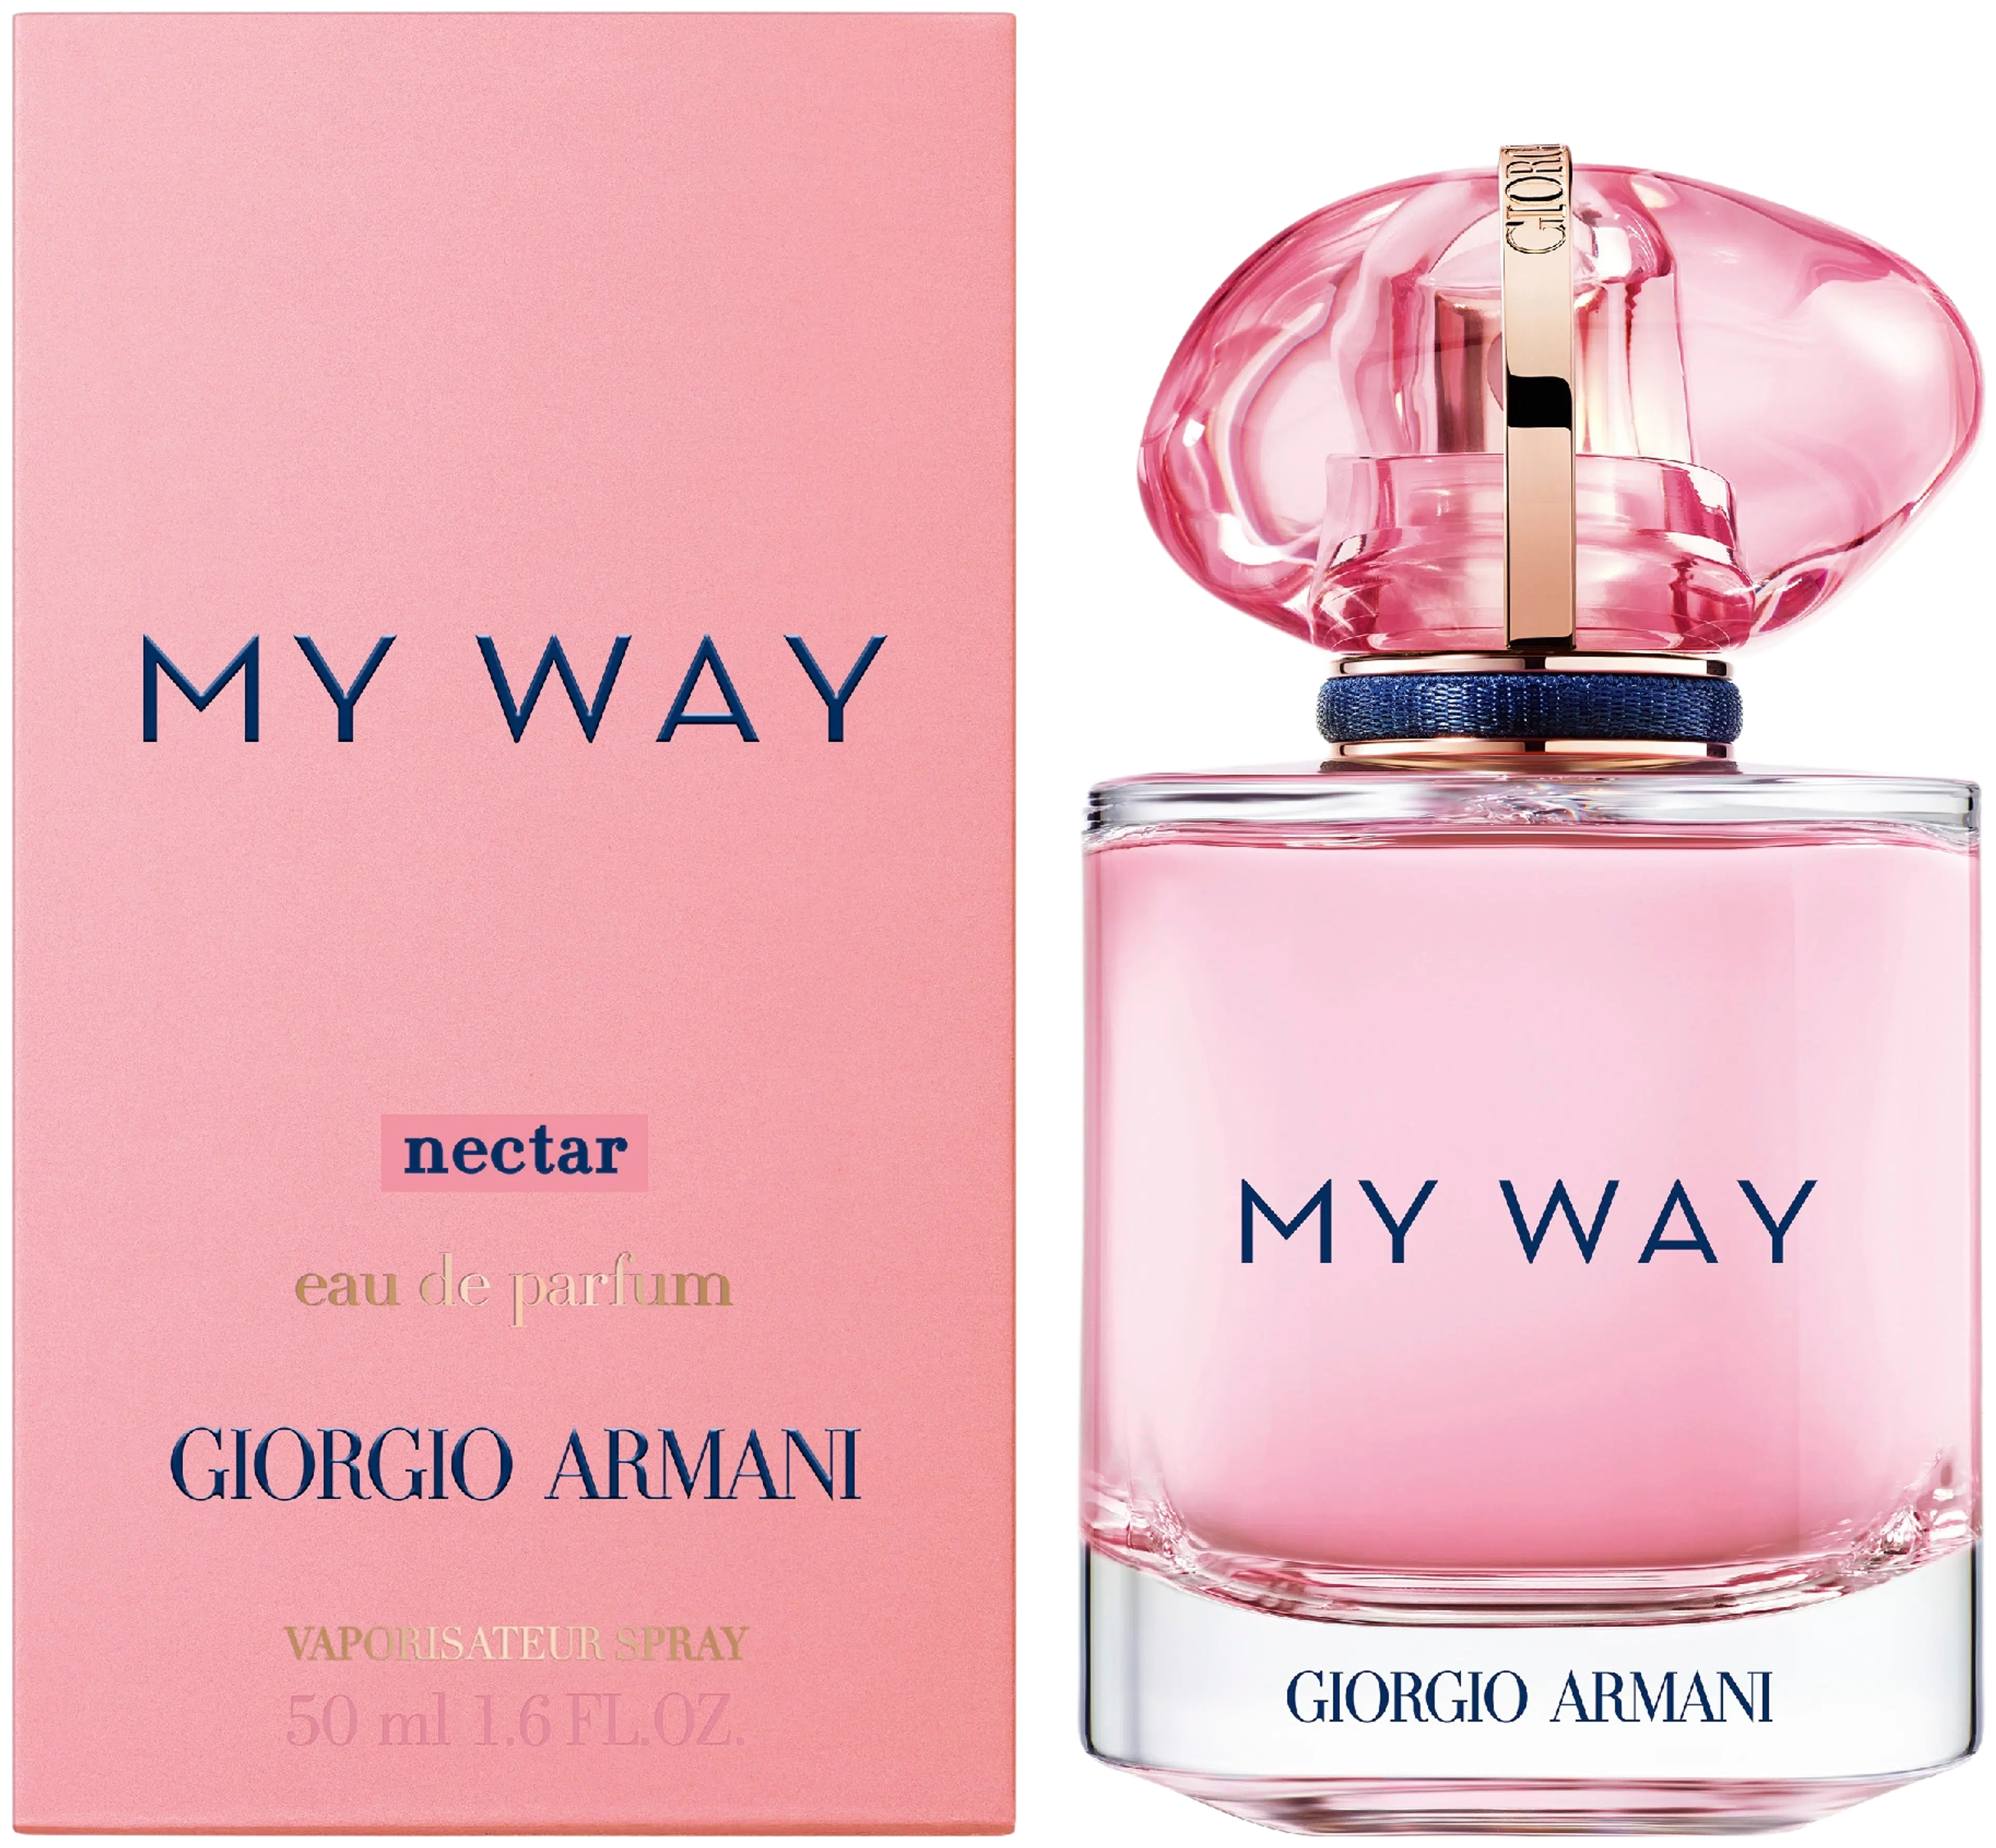 Giorgio Armani My Way Nectar EdP tuoksu 50 ml